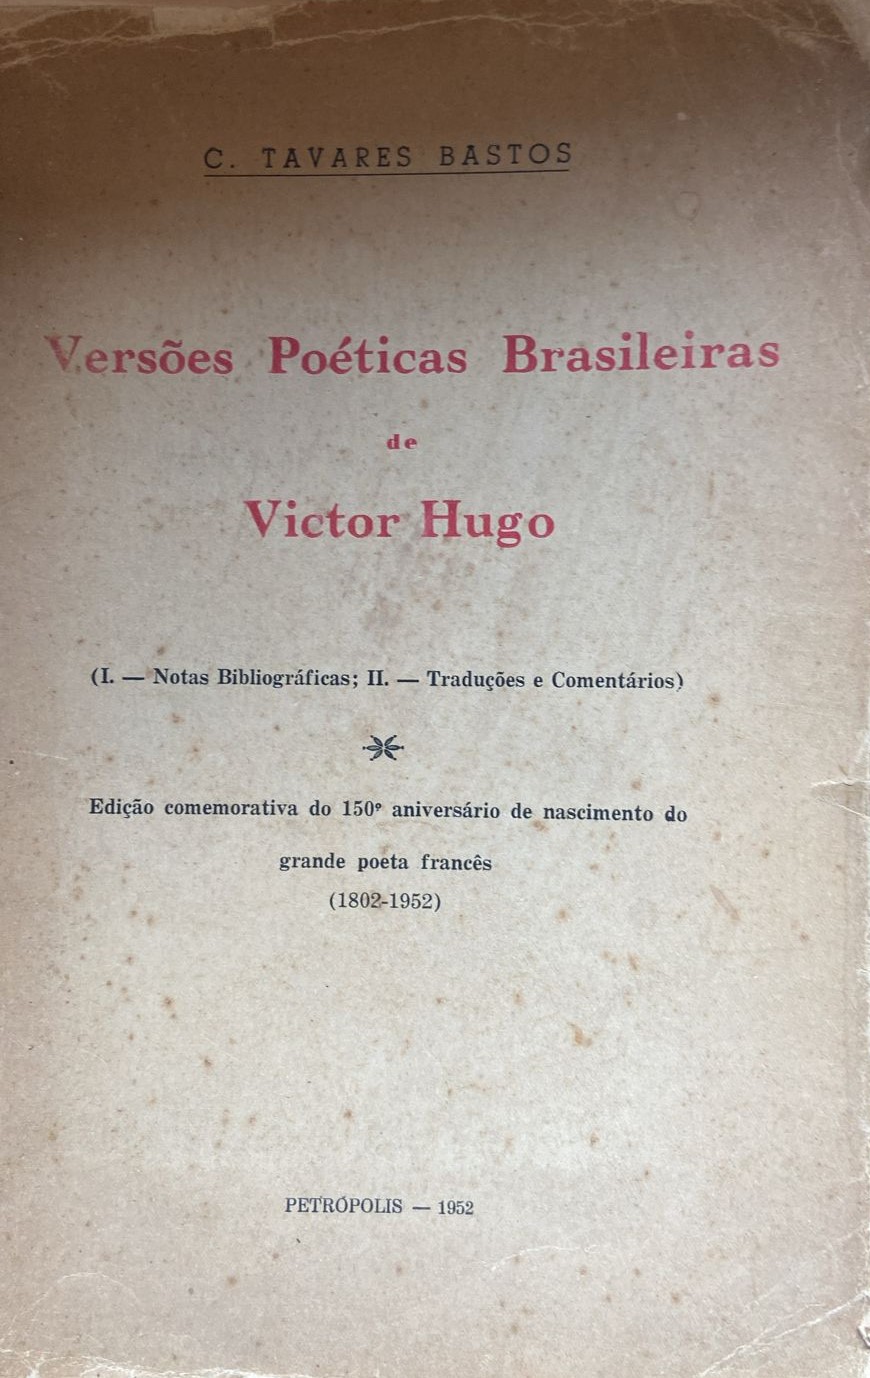 Versões poéticas brasileiras de Victor Hugo